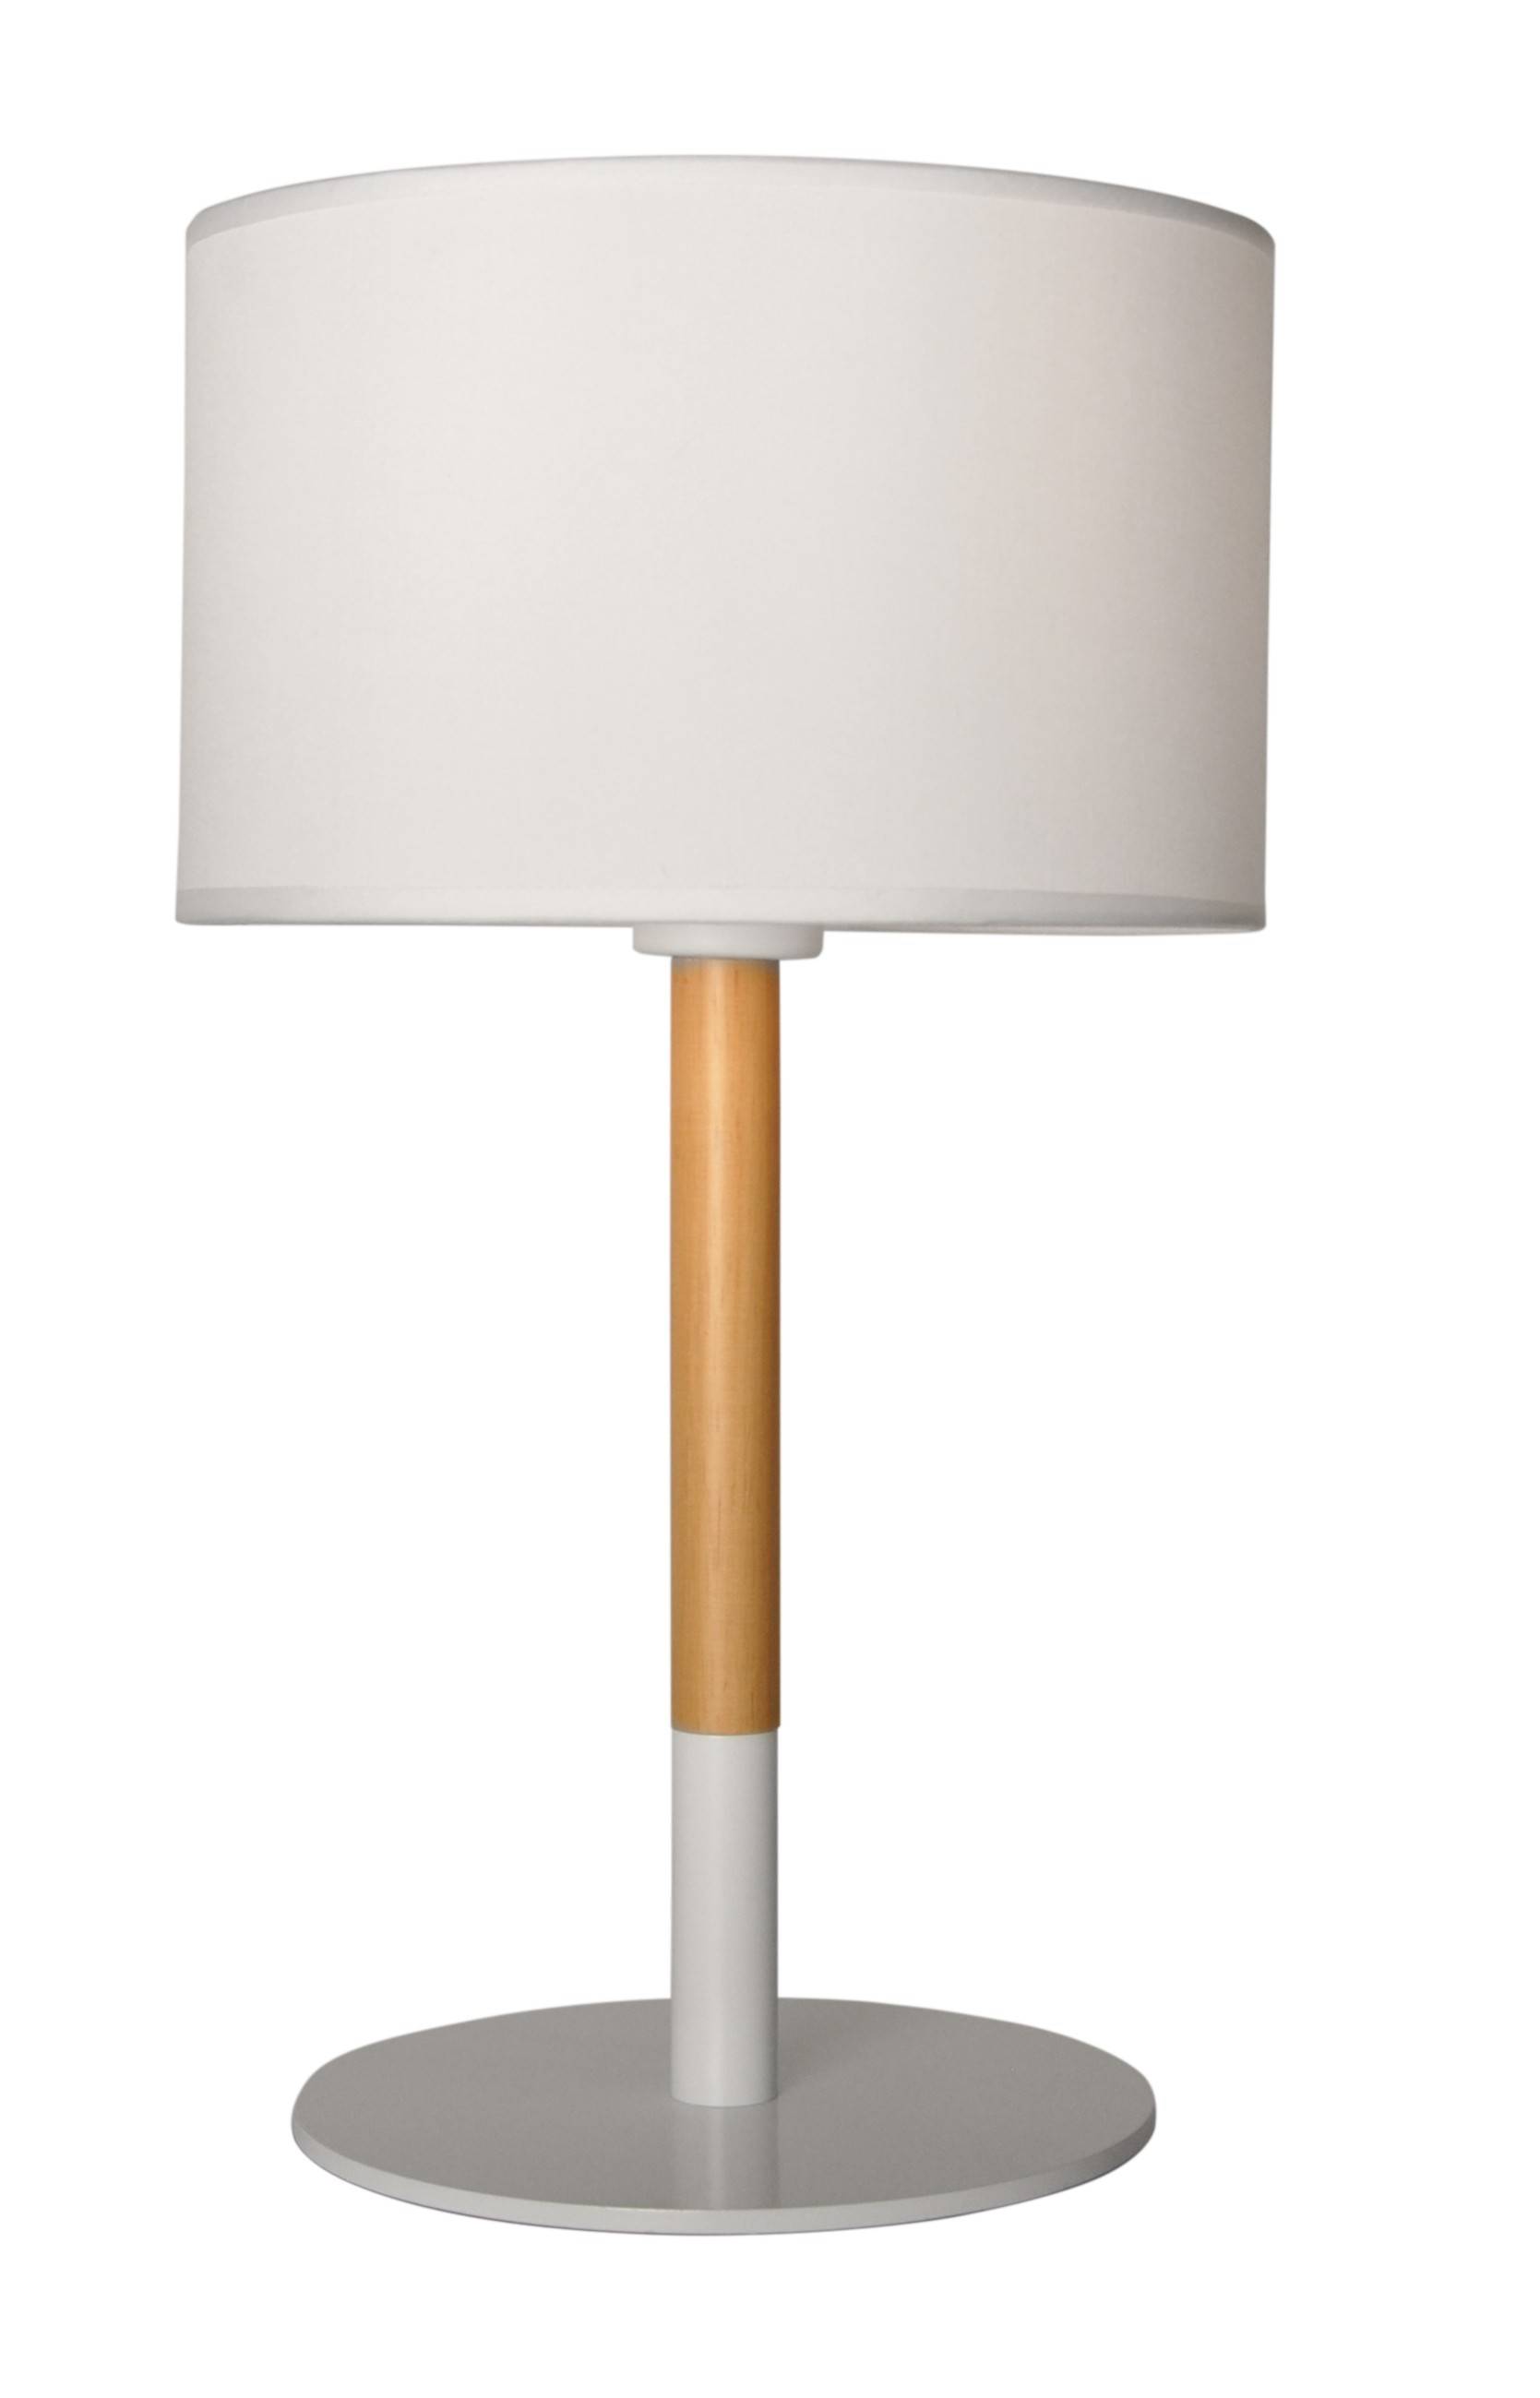 Lámpara de mesa a pilas de aluminio blanco